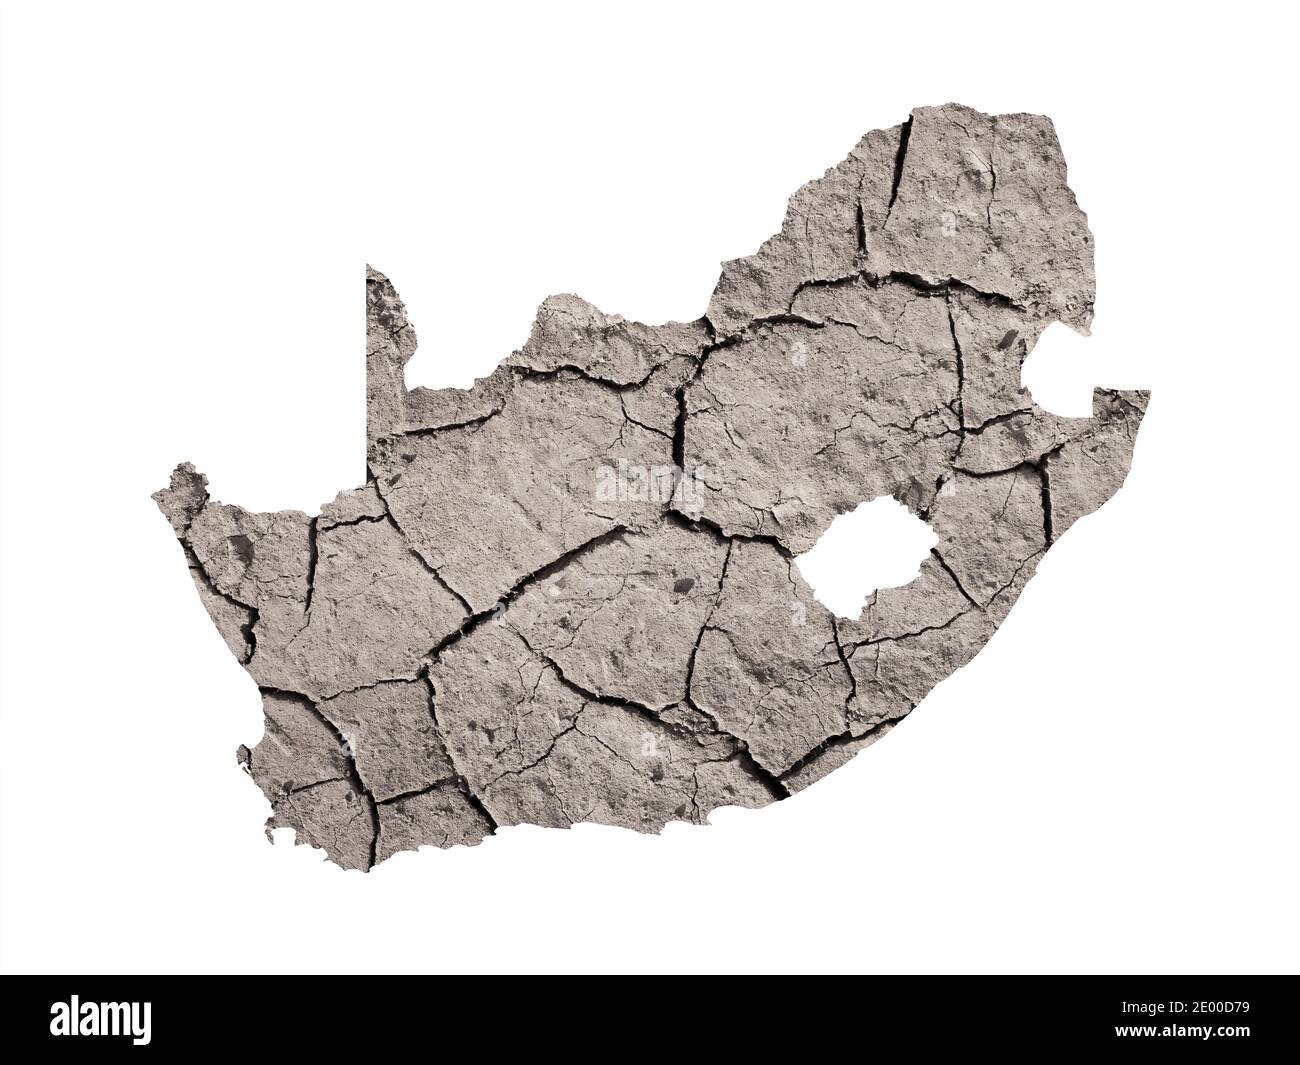 Silhouette del Sud Africa. La mappa è realizzata con l'immagine di terra asciutta. Metafora di cambiamenti climatici catastrofici nella zona - siccità, dryland, desertifica Foto Stock